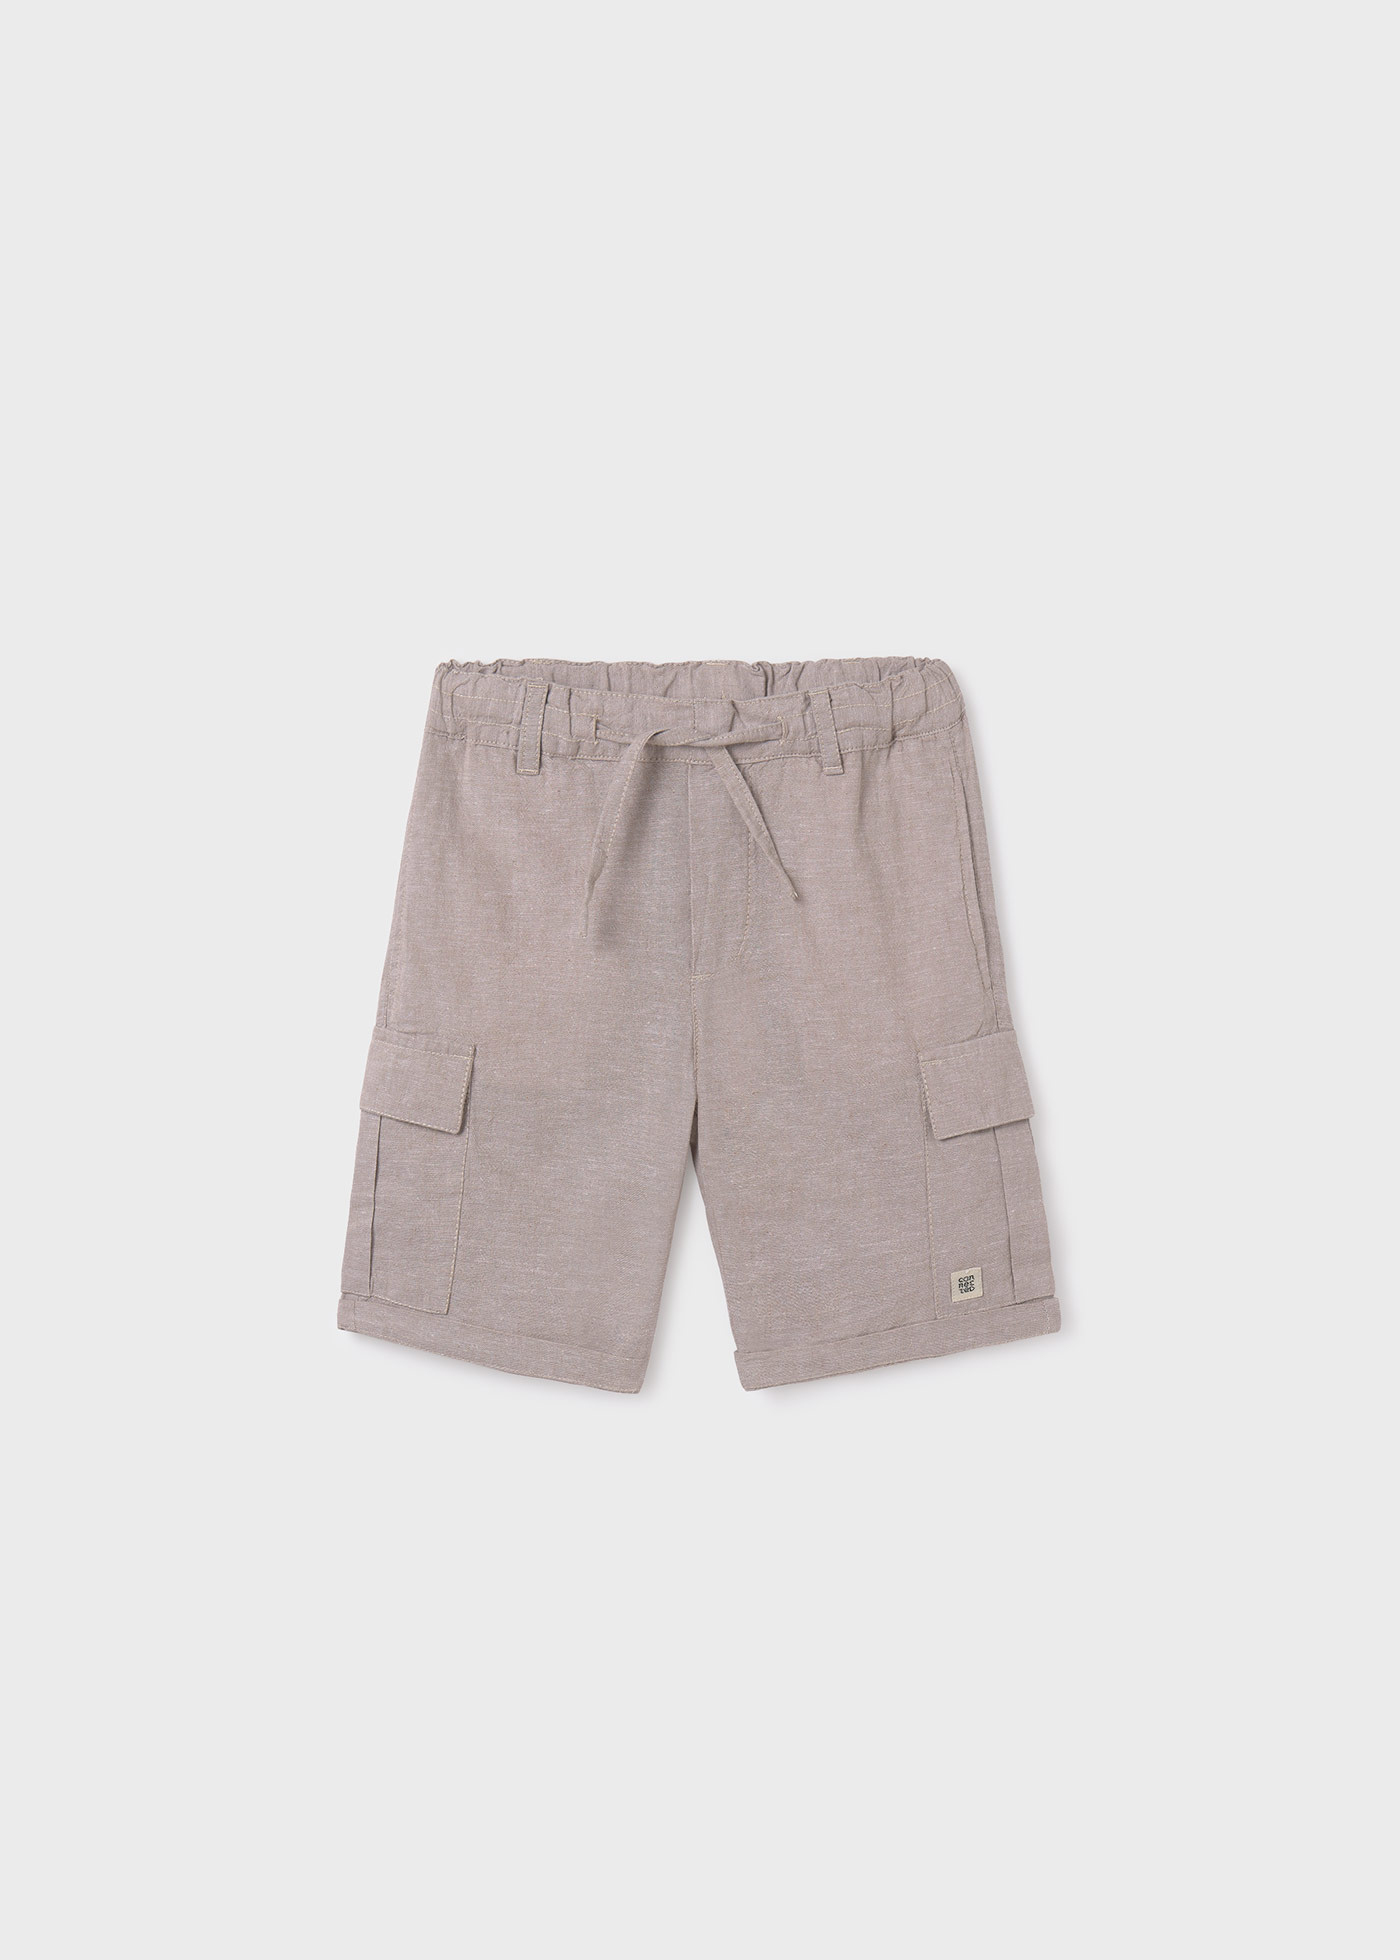 Boys cargo linen shorts